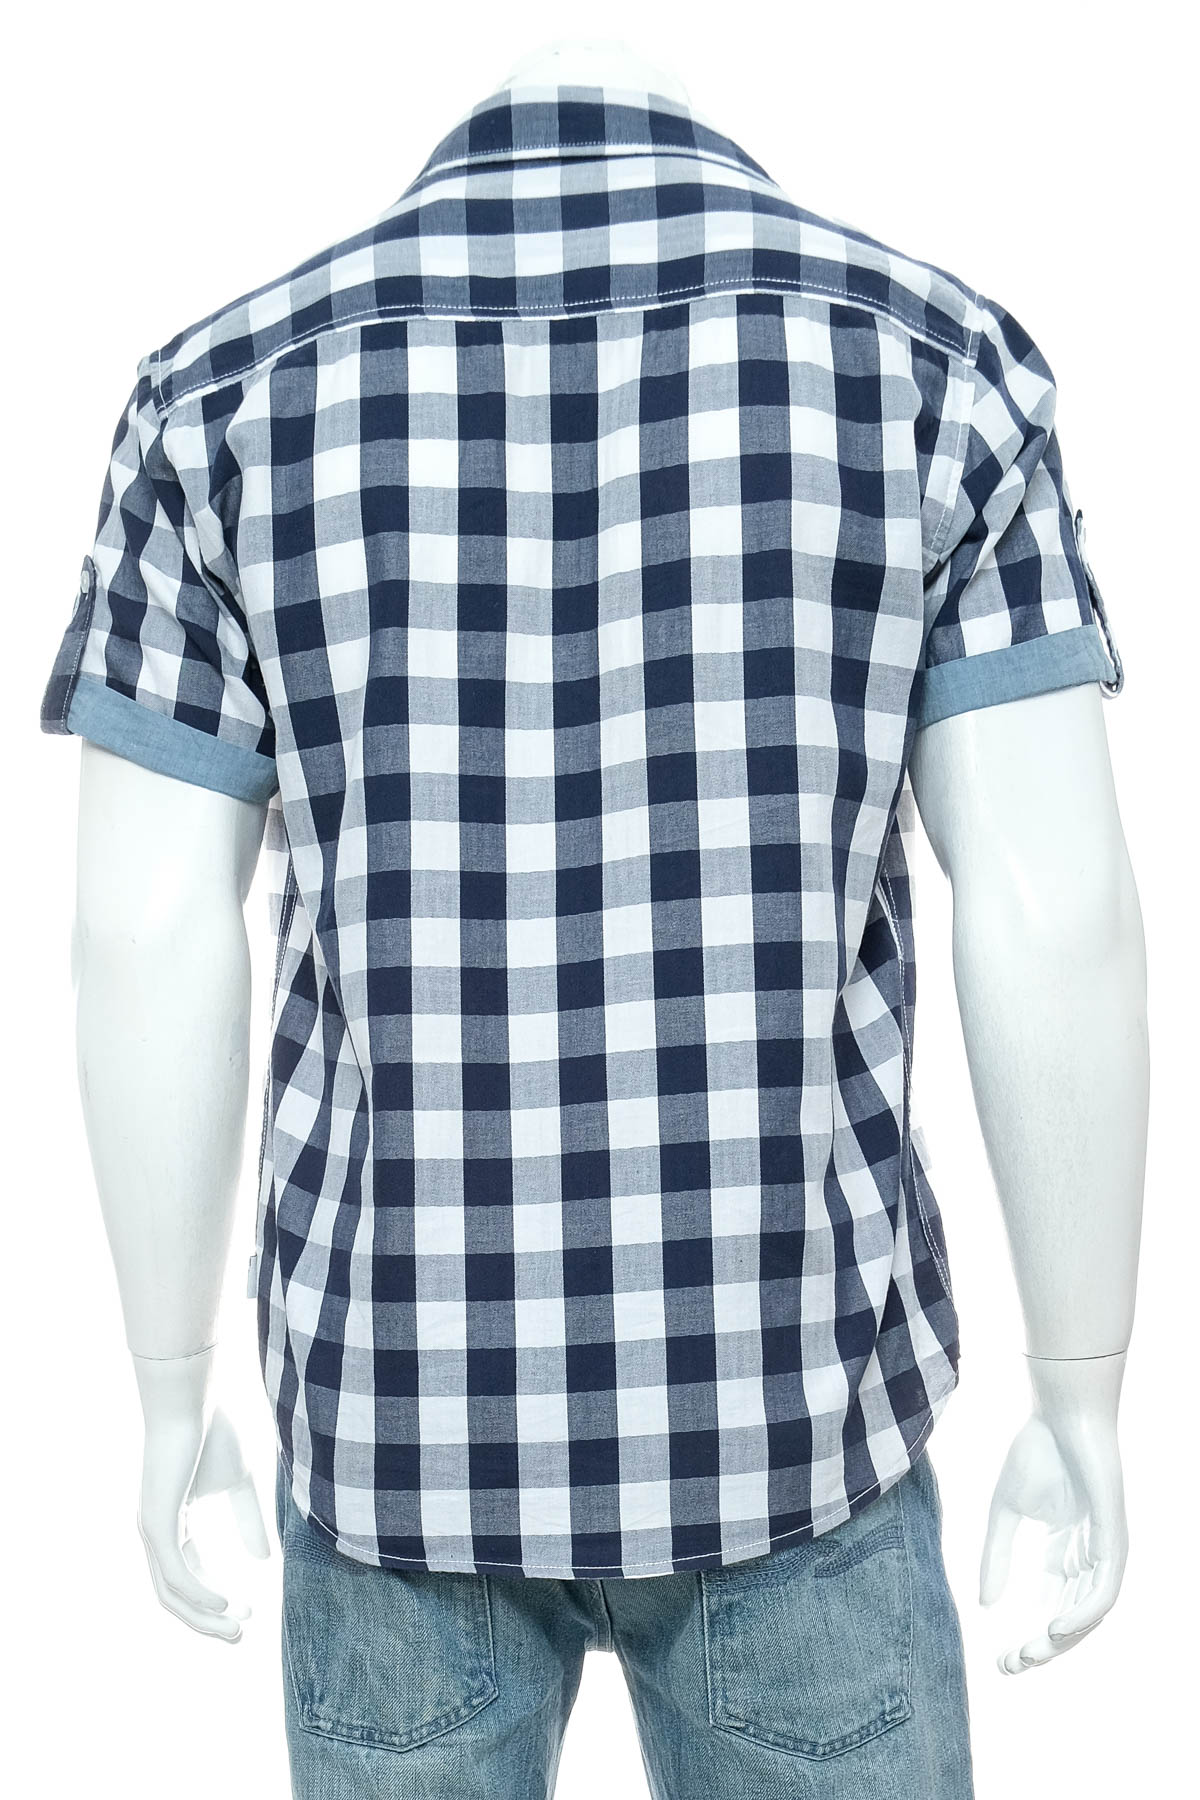 Men's shirt - Identic - 1